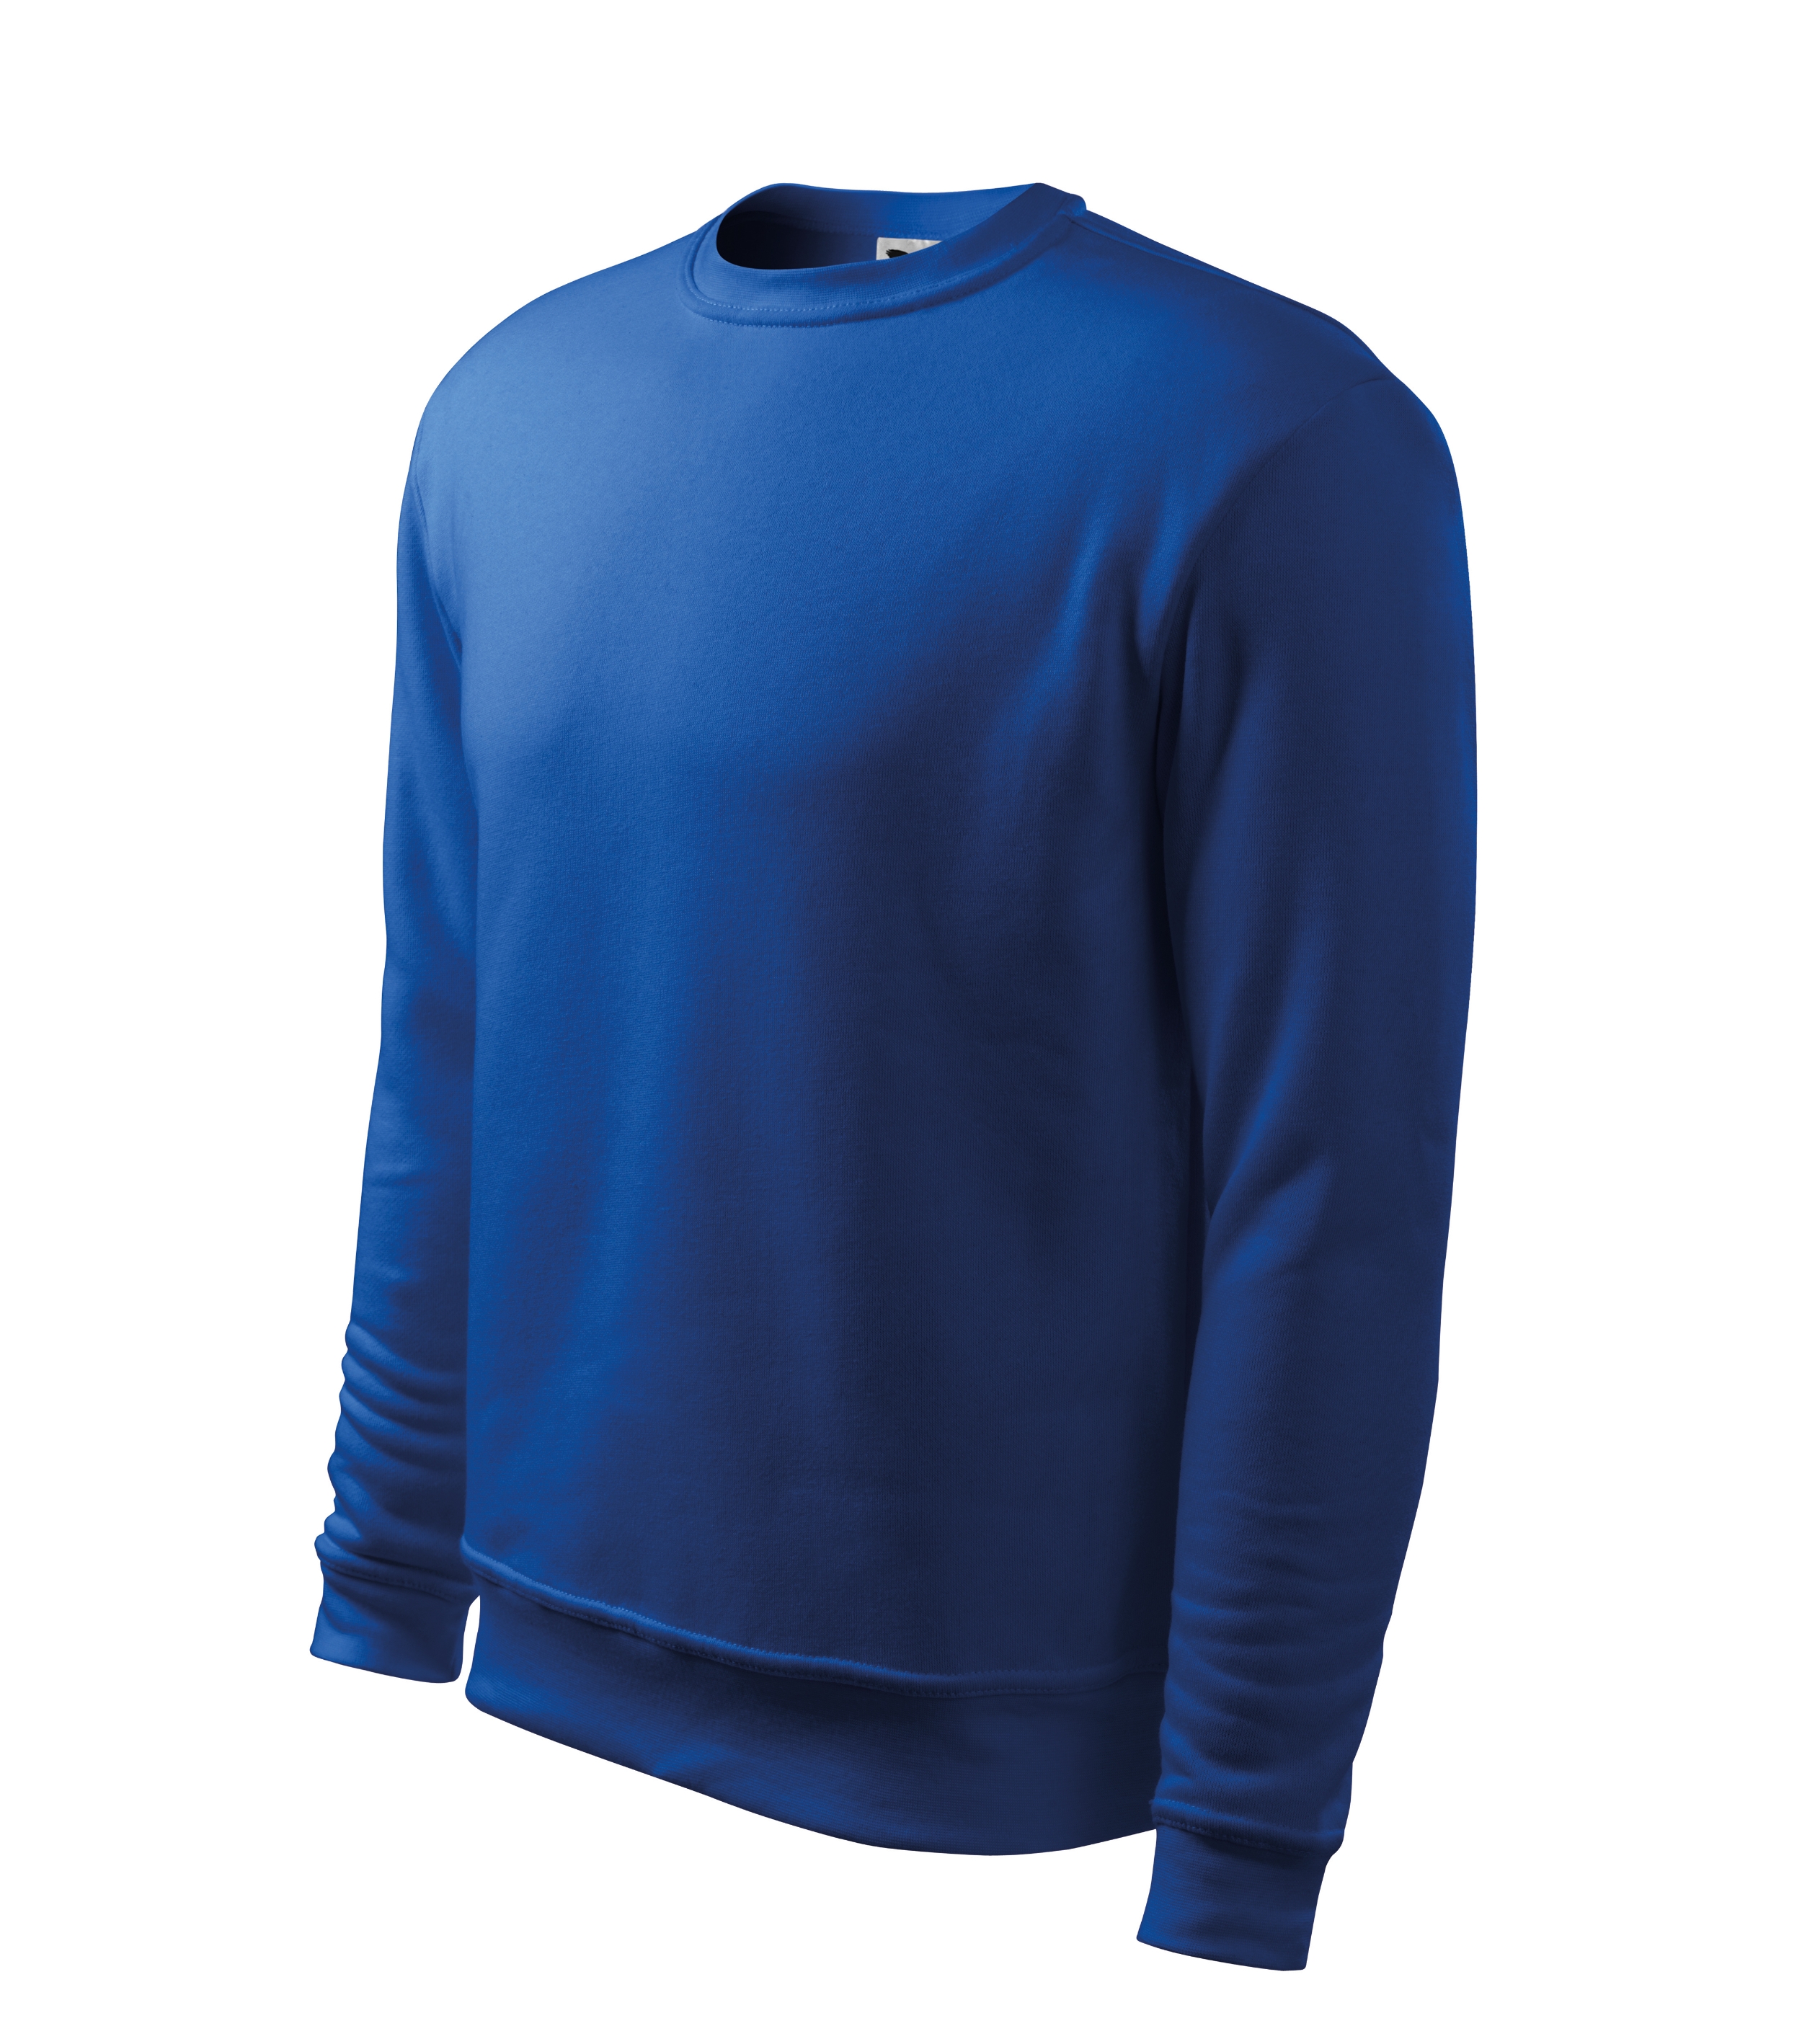 Sweatshirt für Herren und Kinder -  ESSENTIAL 406 - Ärmelmanschetten und Kragensaum - Pullover oder Sweater ohne Kapuze  für Männer Jungen und Mädchen 